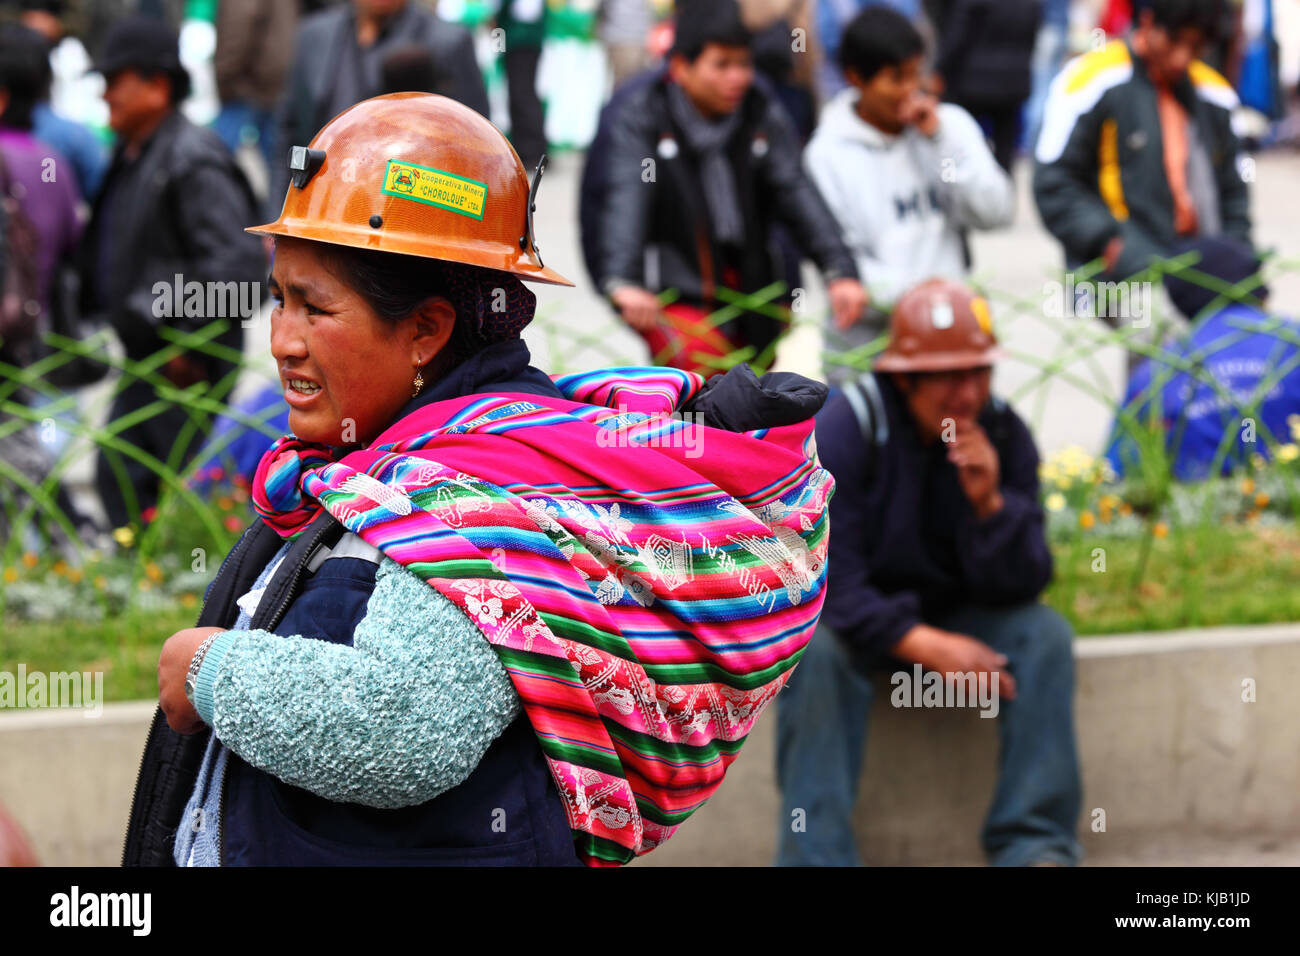 Un mineur féminin prend part à un gouvernement pro mars pour montrer leur soutien à l'intention de construire une route à travers la région TIPNIS, La Paz, Bolivie Banque D'Images